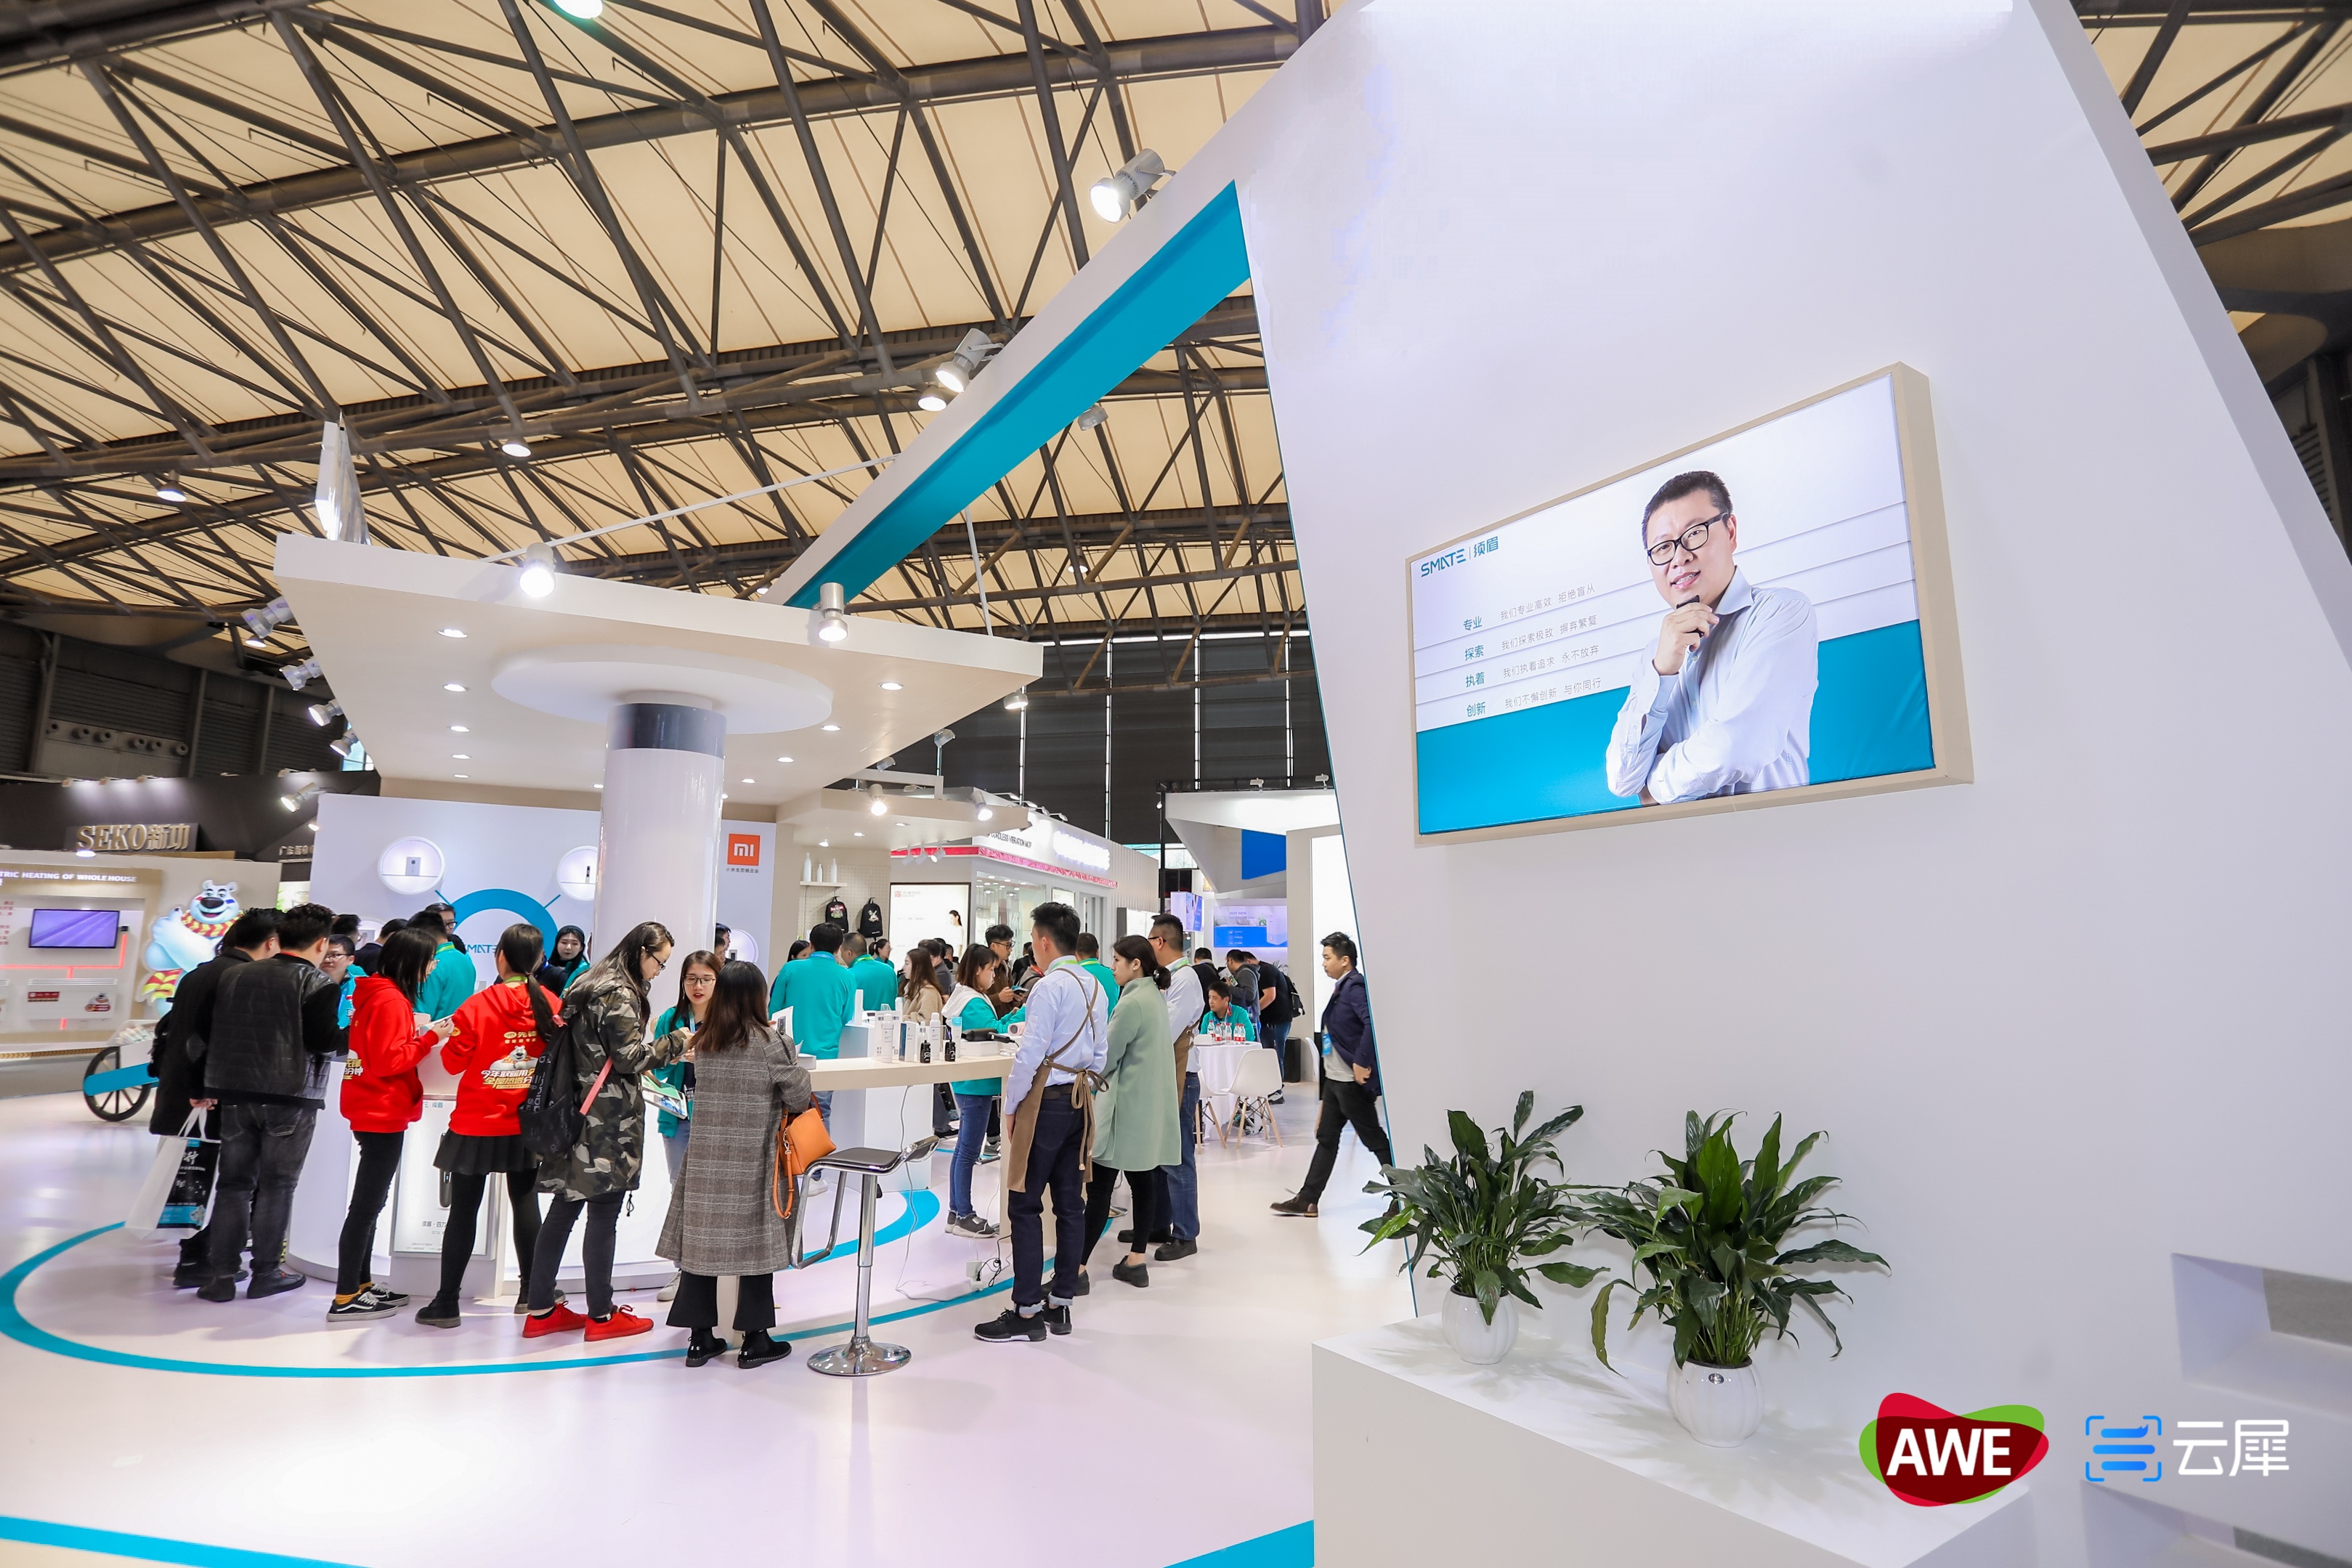 须眉科技亮相上海AWE展，新品及招商大会引人瞩目